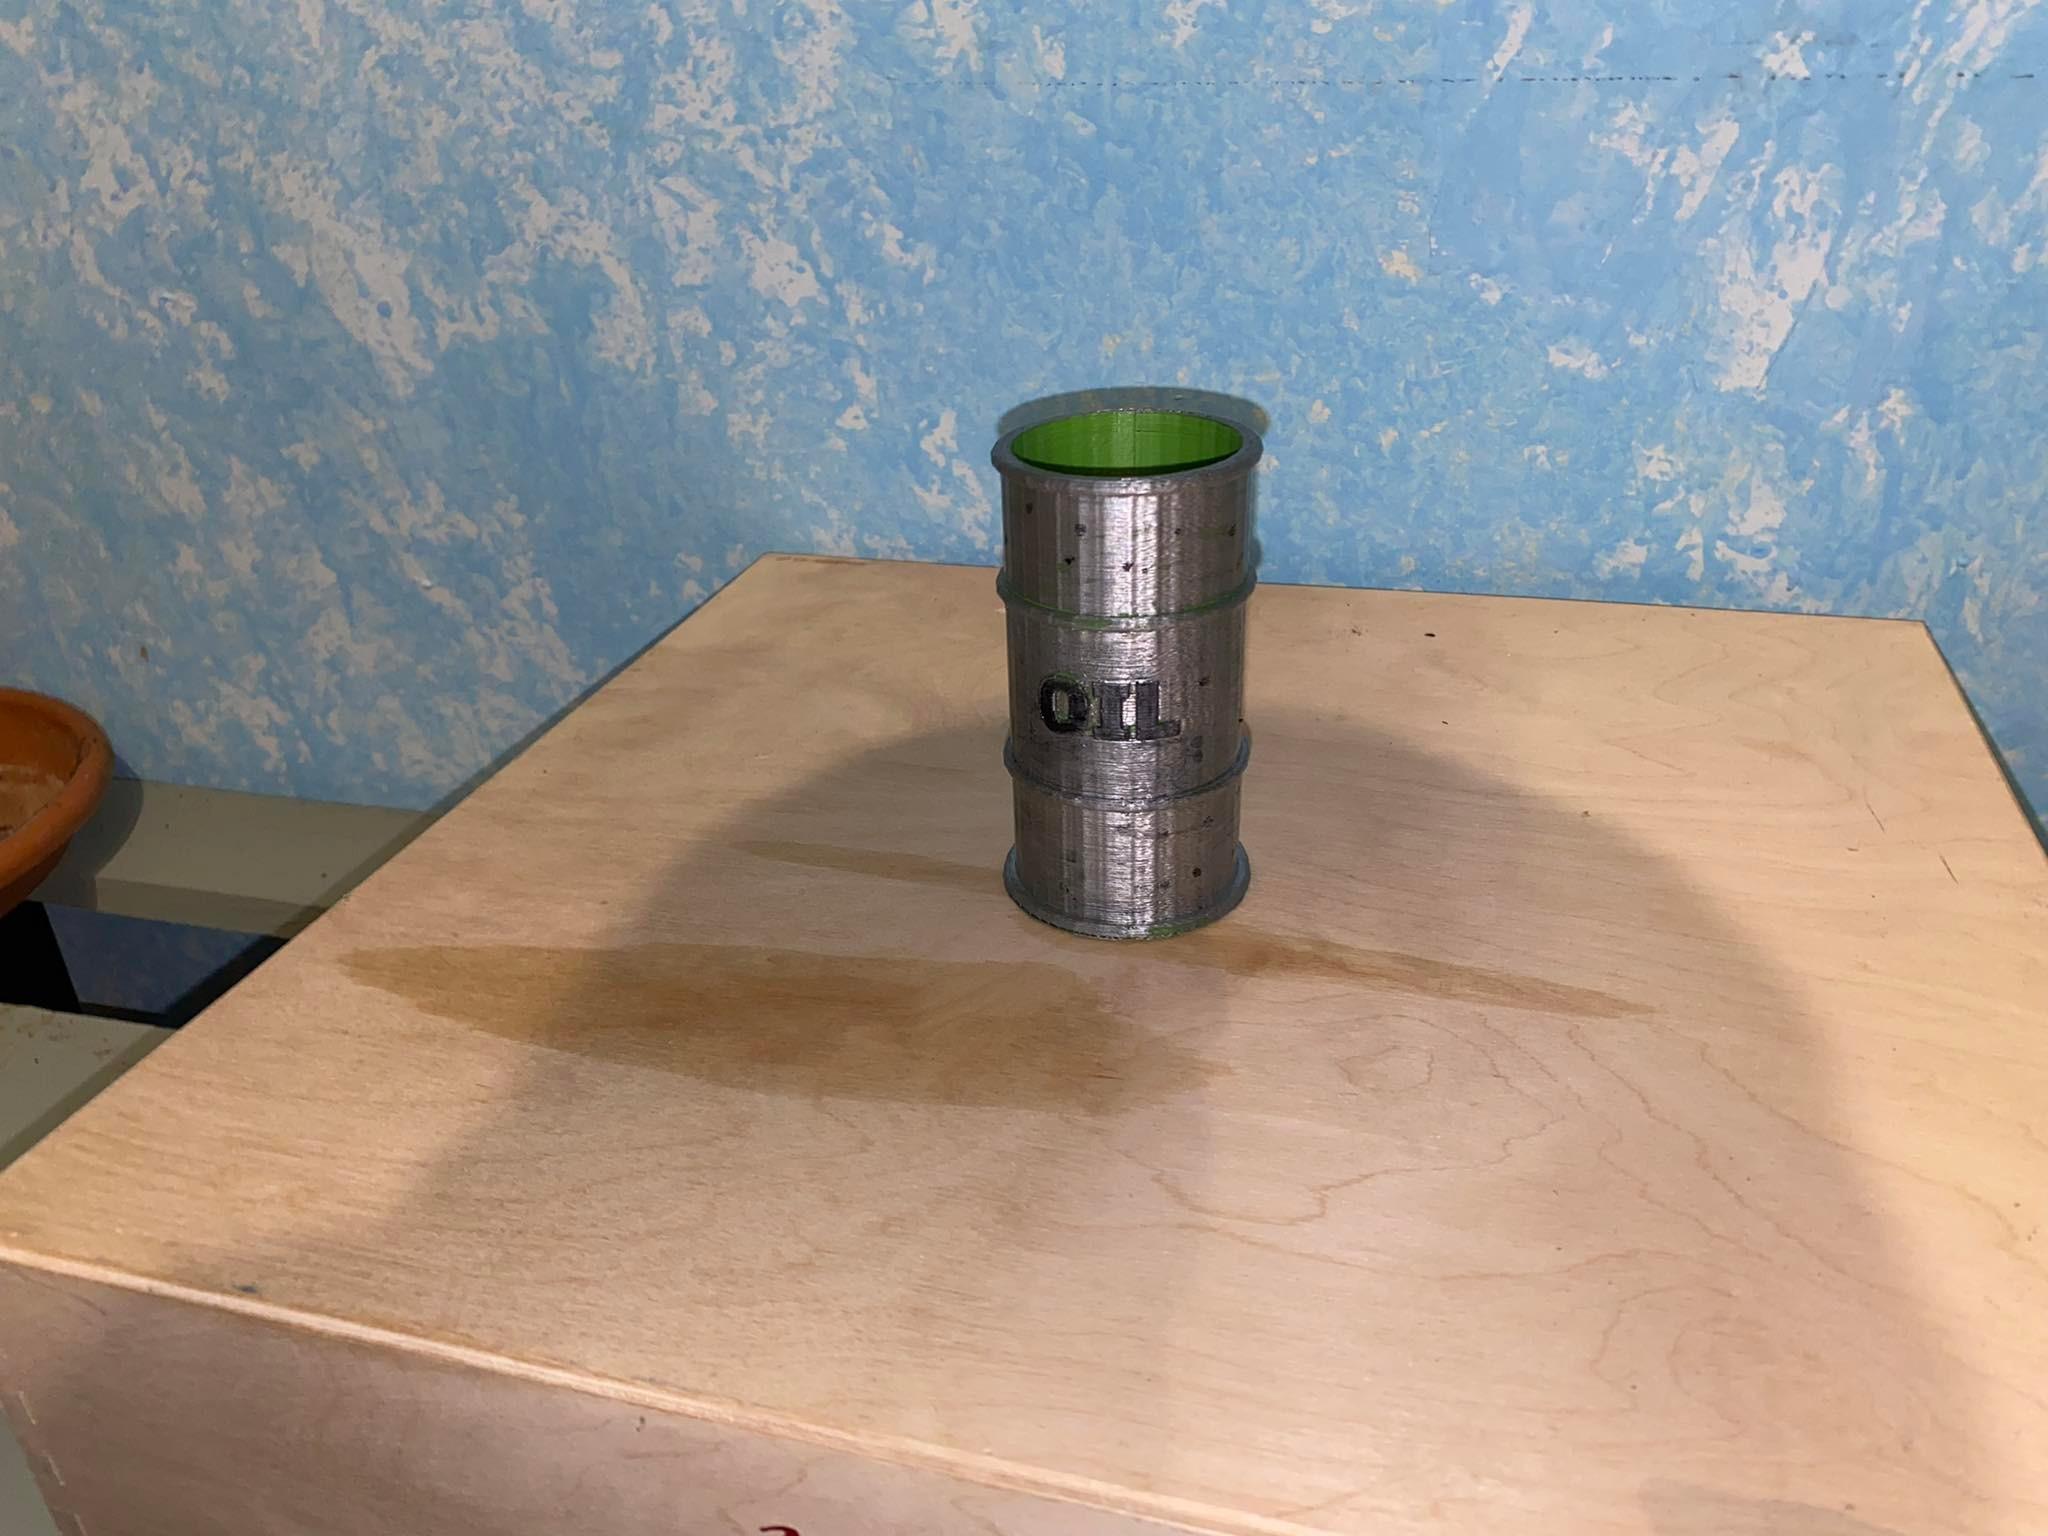 Oil Barrel Pen Holder 3d model